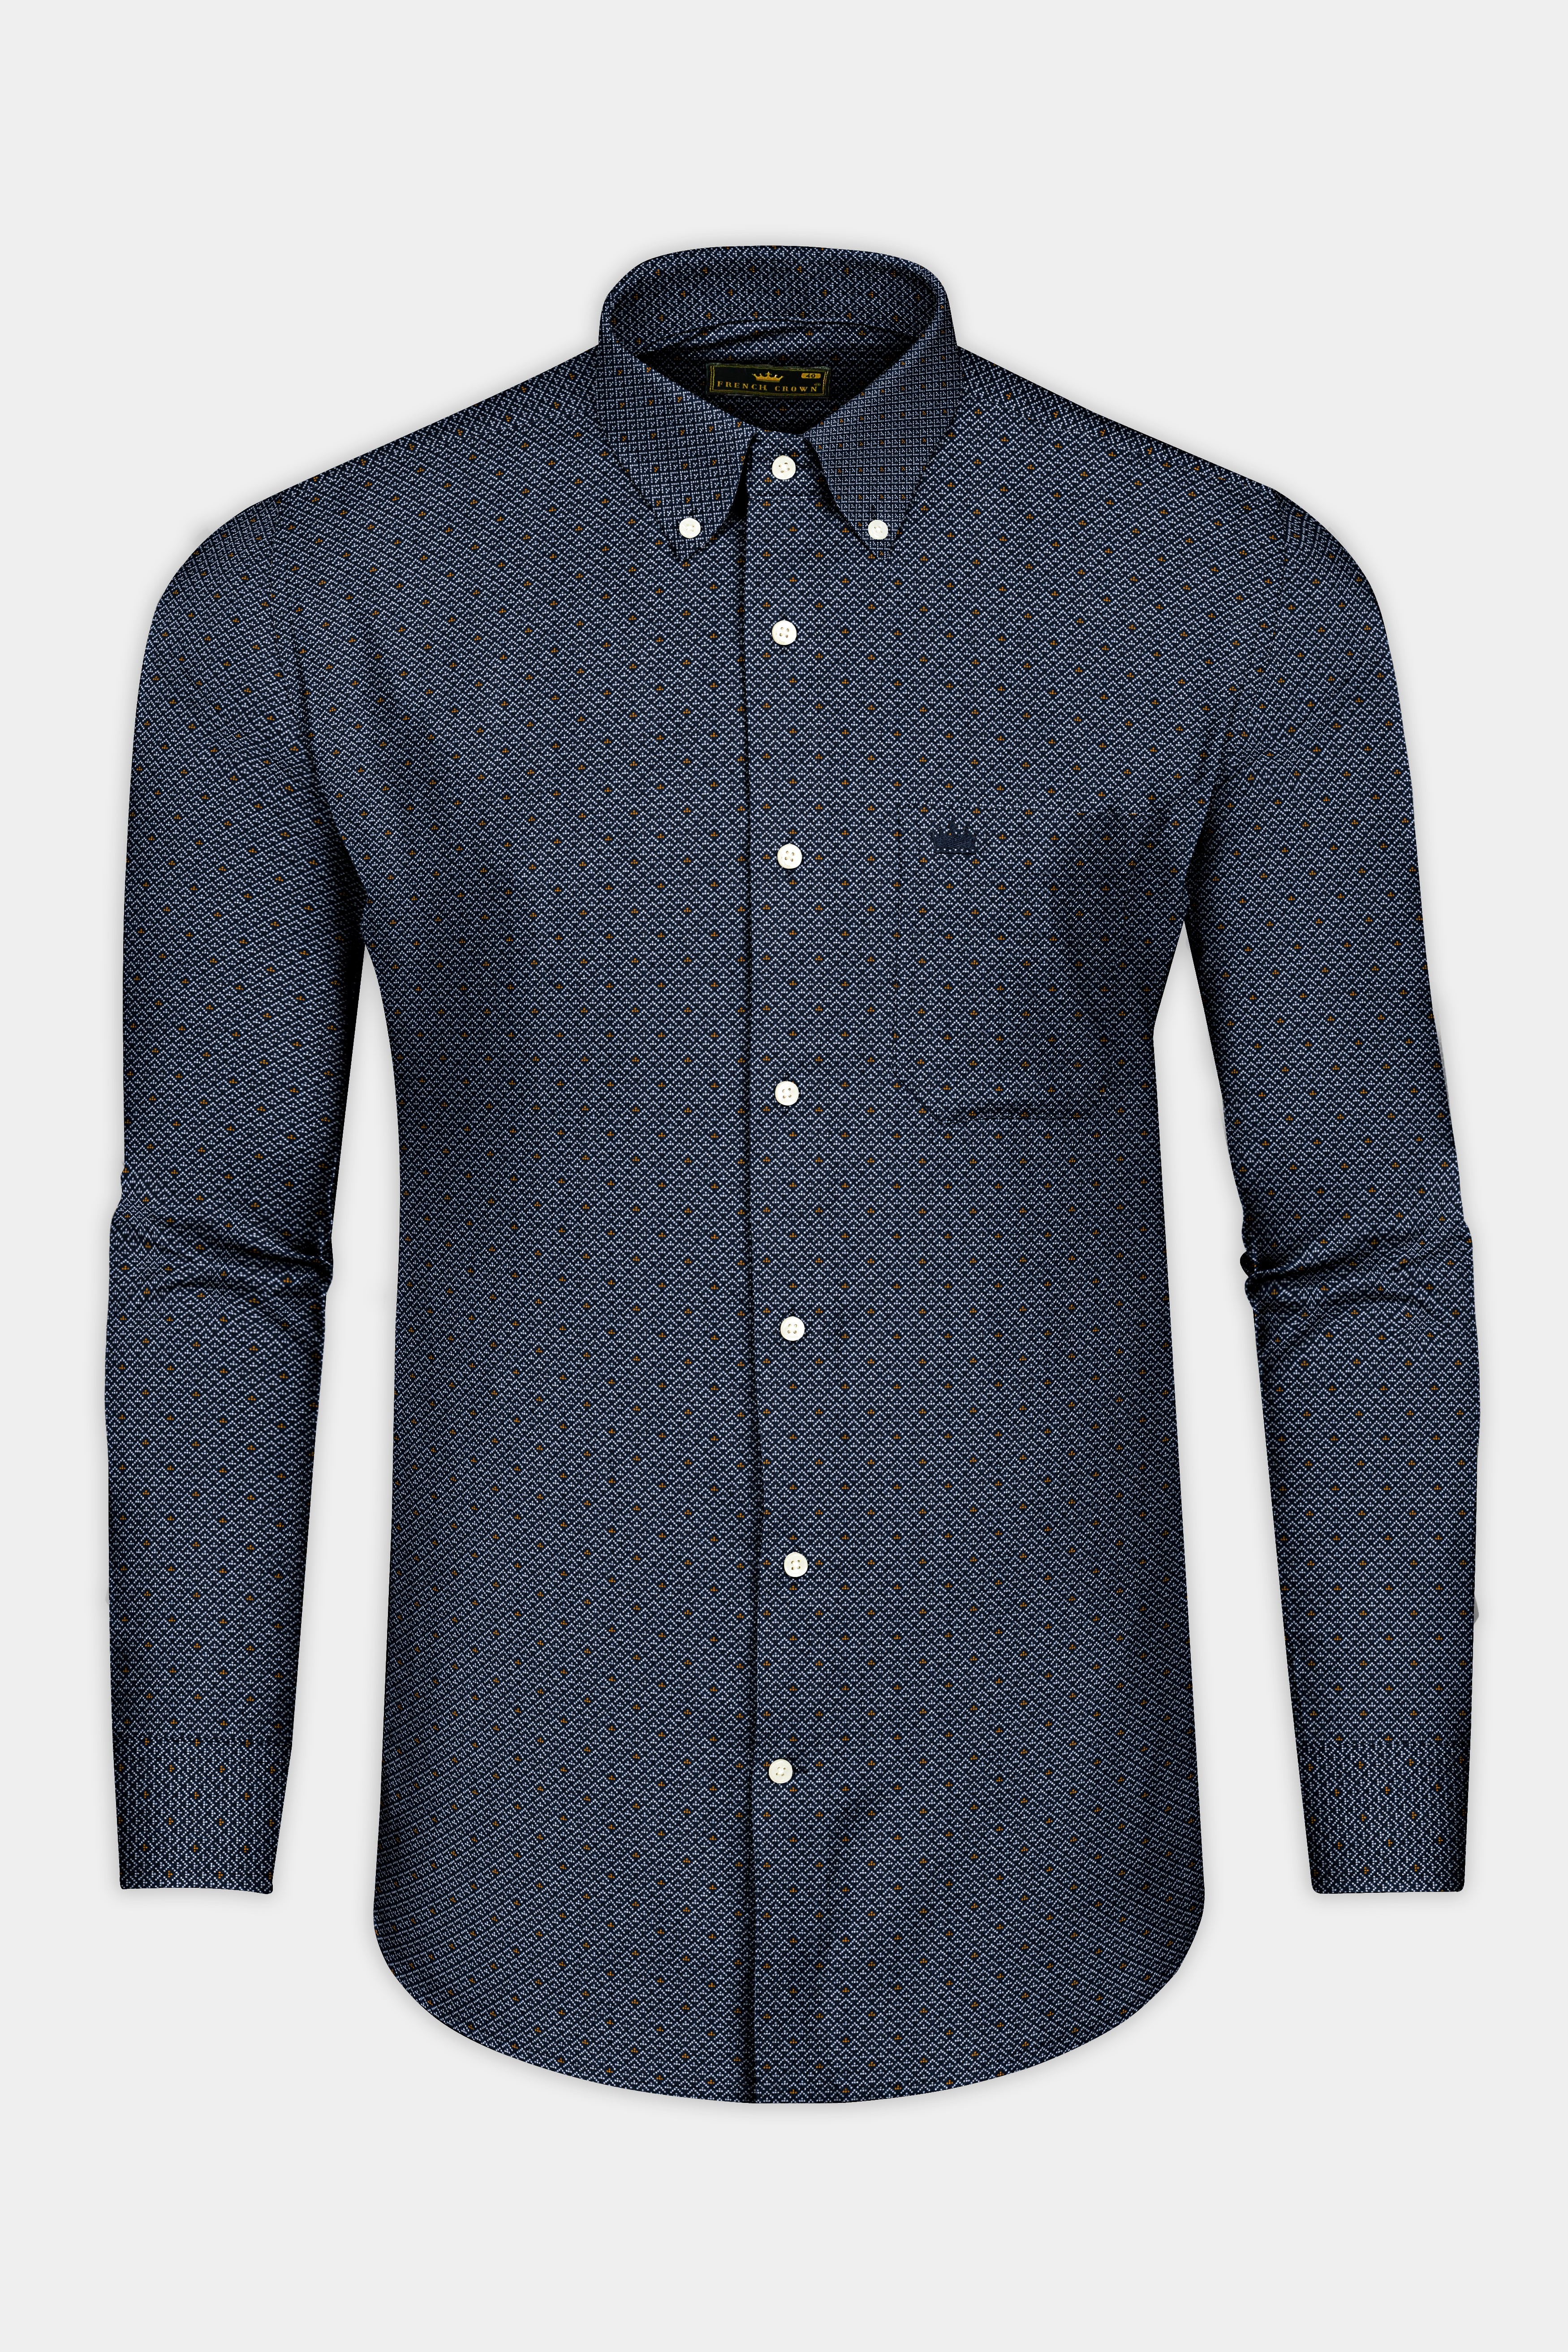 Mirage Blue Textured Twill Cotton Shirt